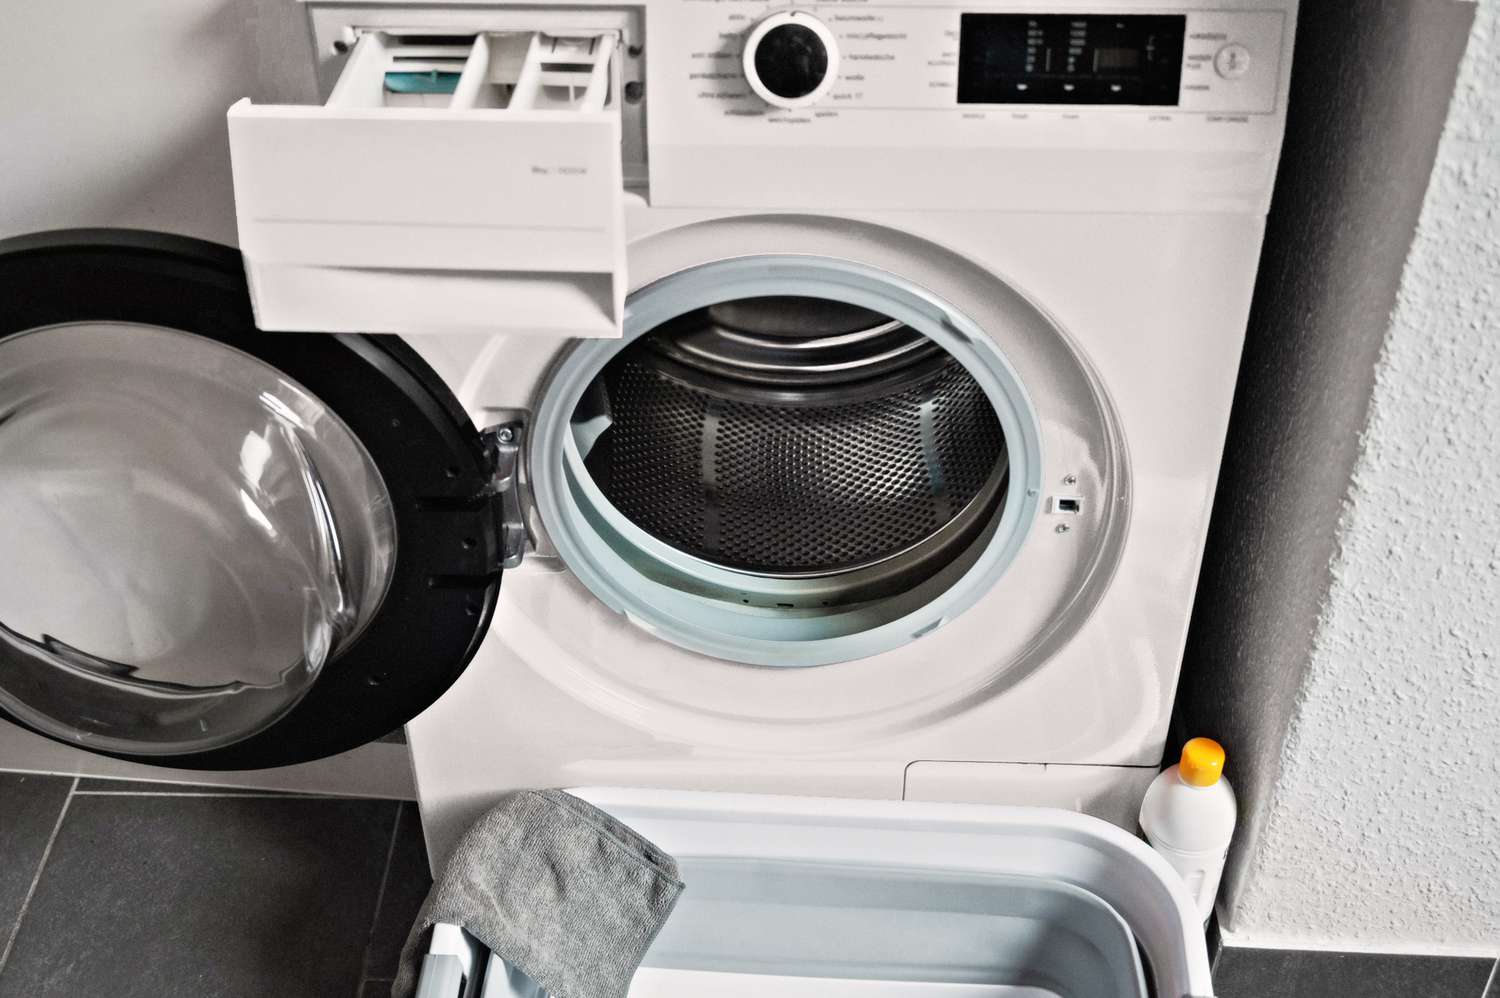 Waschmaschine und Spenderschubladen zur Reinigung geleert